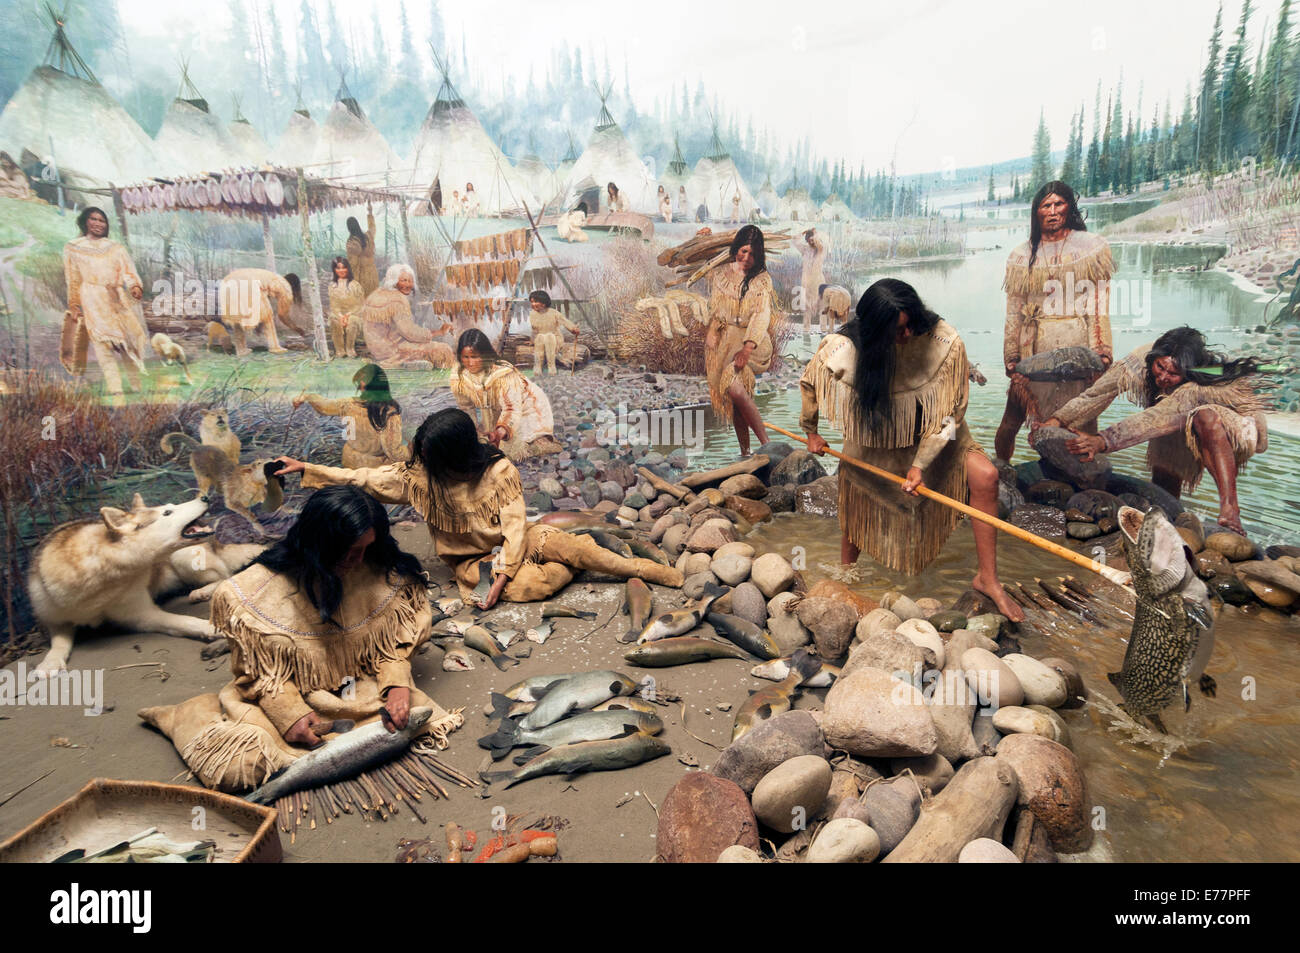 Elk203-5286 Canada, Alberta, Edmonton, Royal Alberta Museum, Indian camp diorama Stock Photo